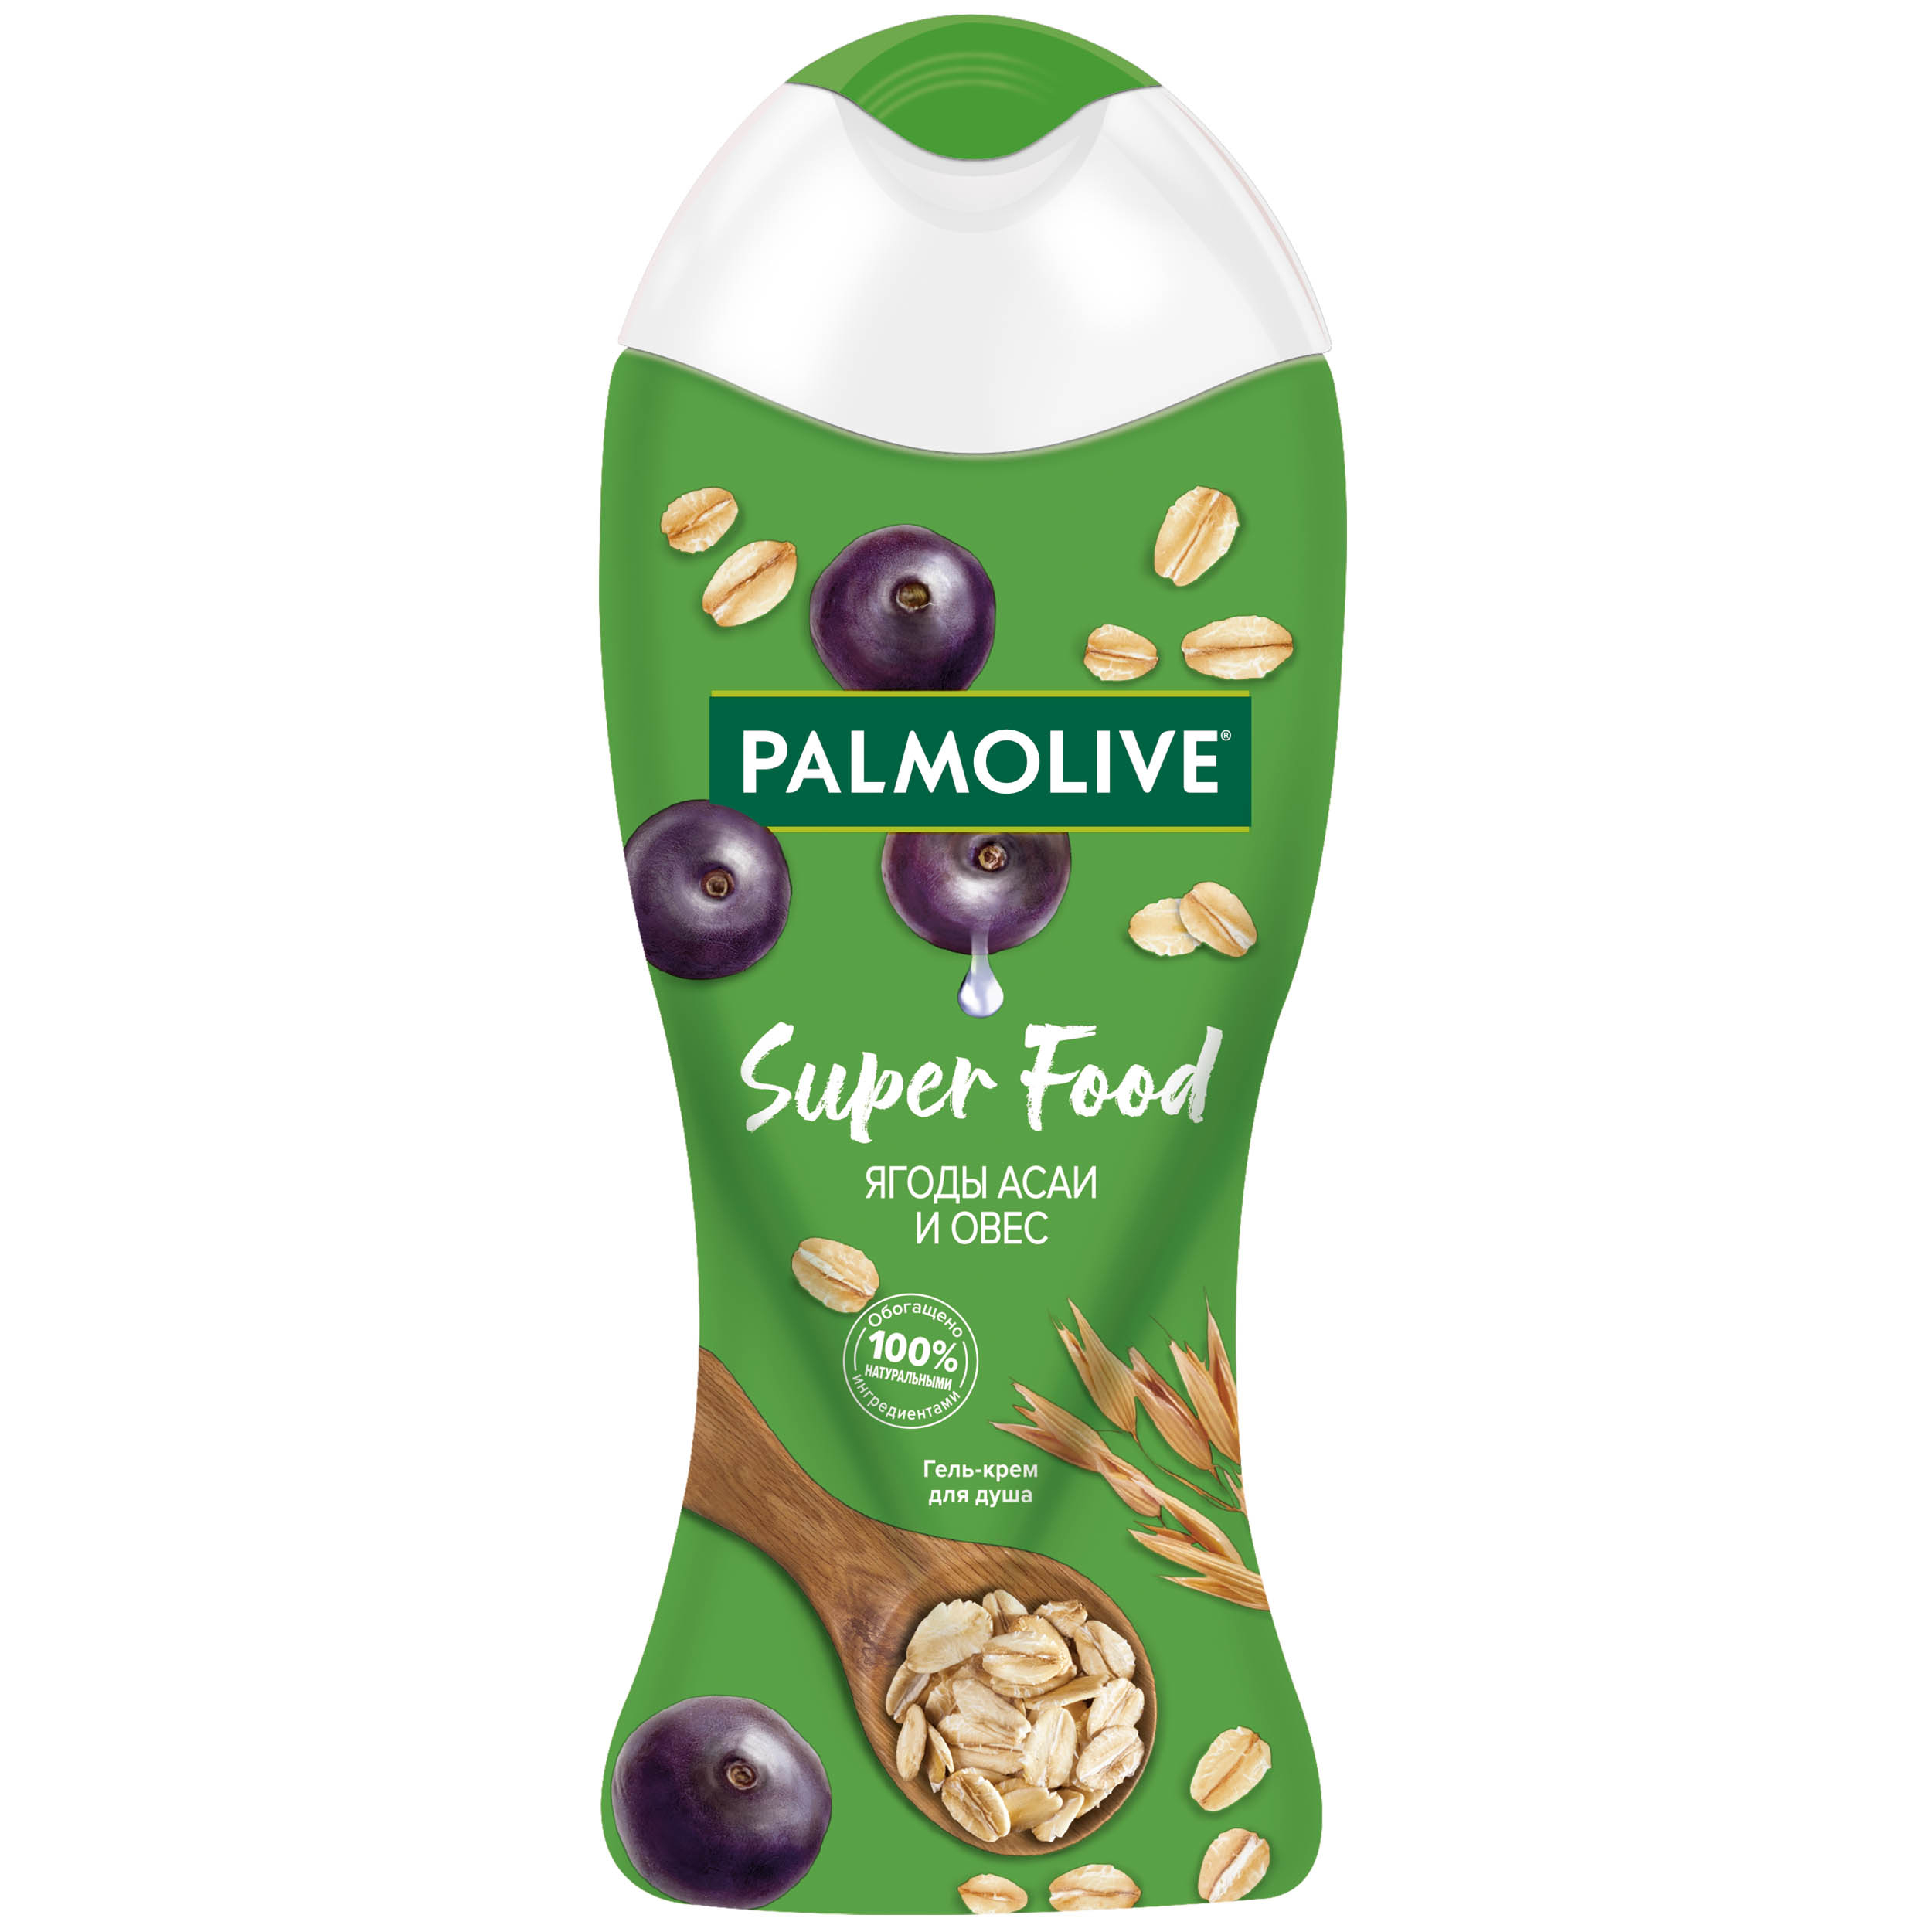 Гель-крем для душа Palmolive Super Food ягоды асаи овес 250 мл жидкое мыло palmolive super food ягоды асаи и овес 300 мл